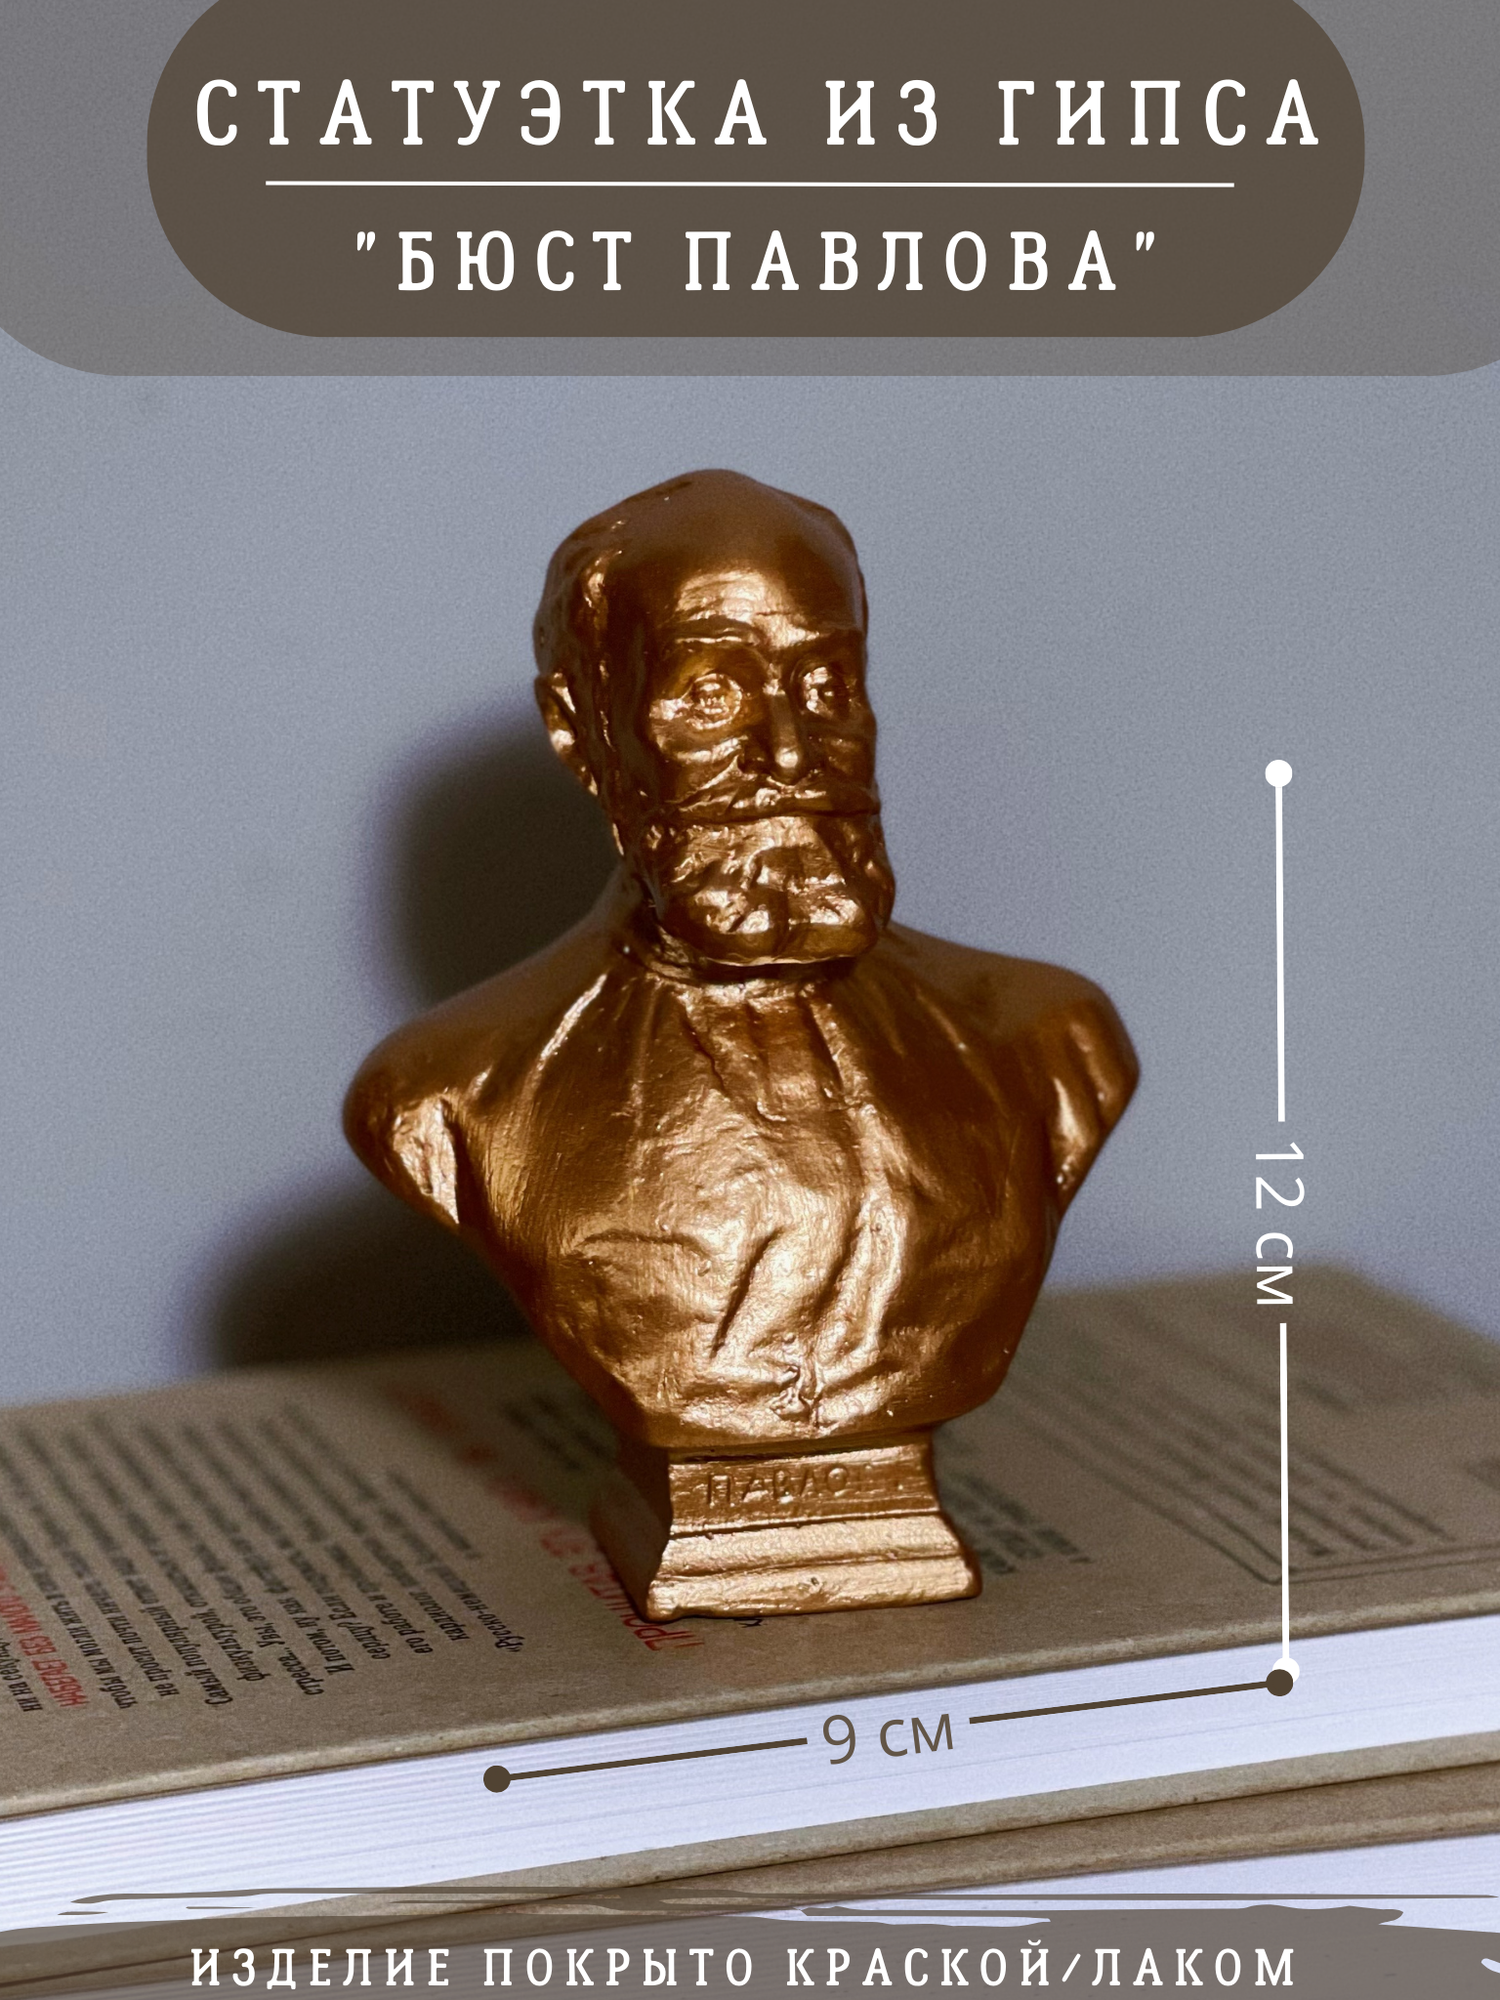 Статуэтка Бюст Павлова бронзовый, 12 см гипс